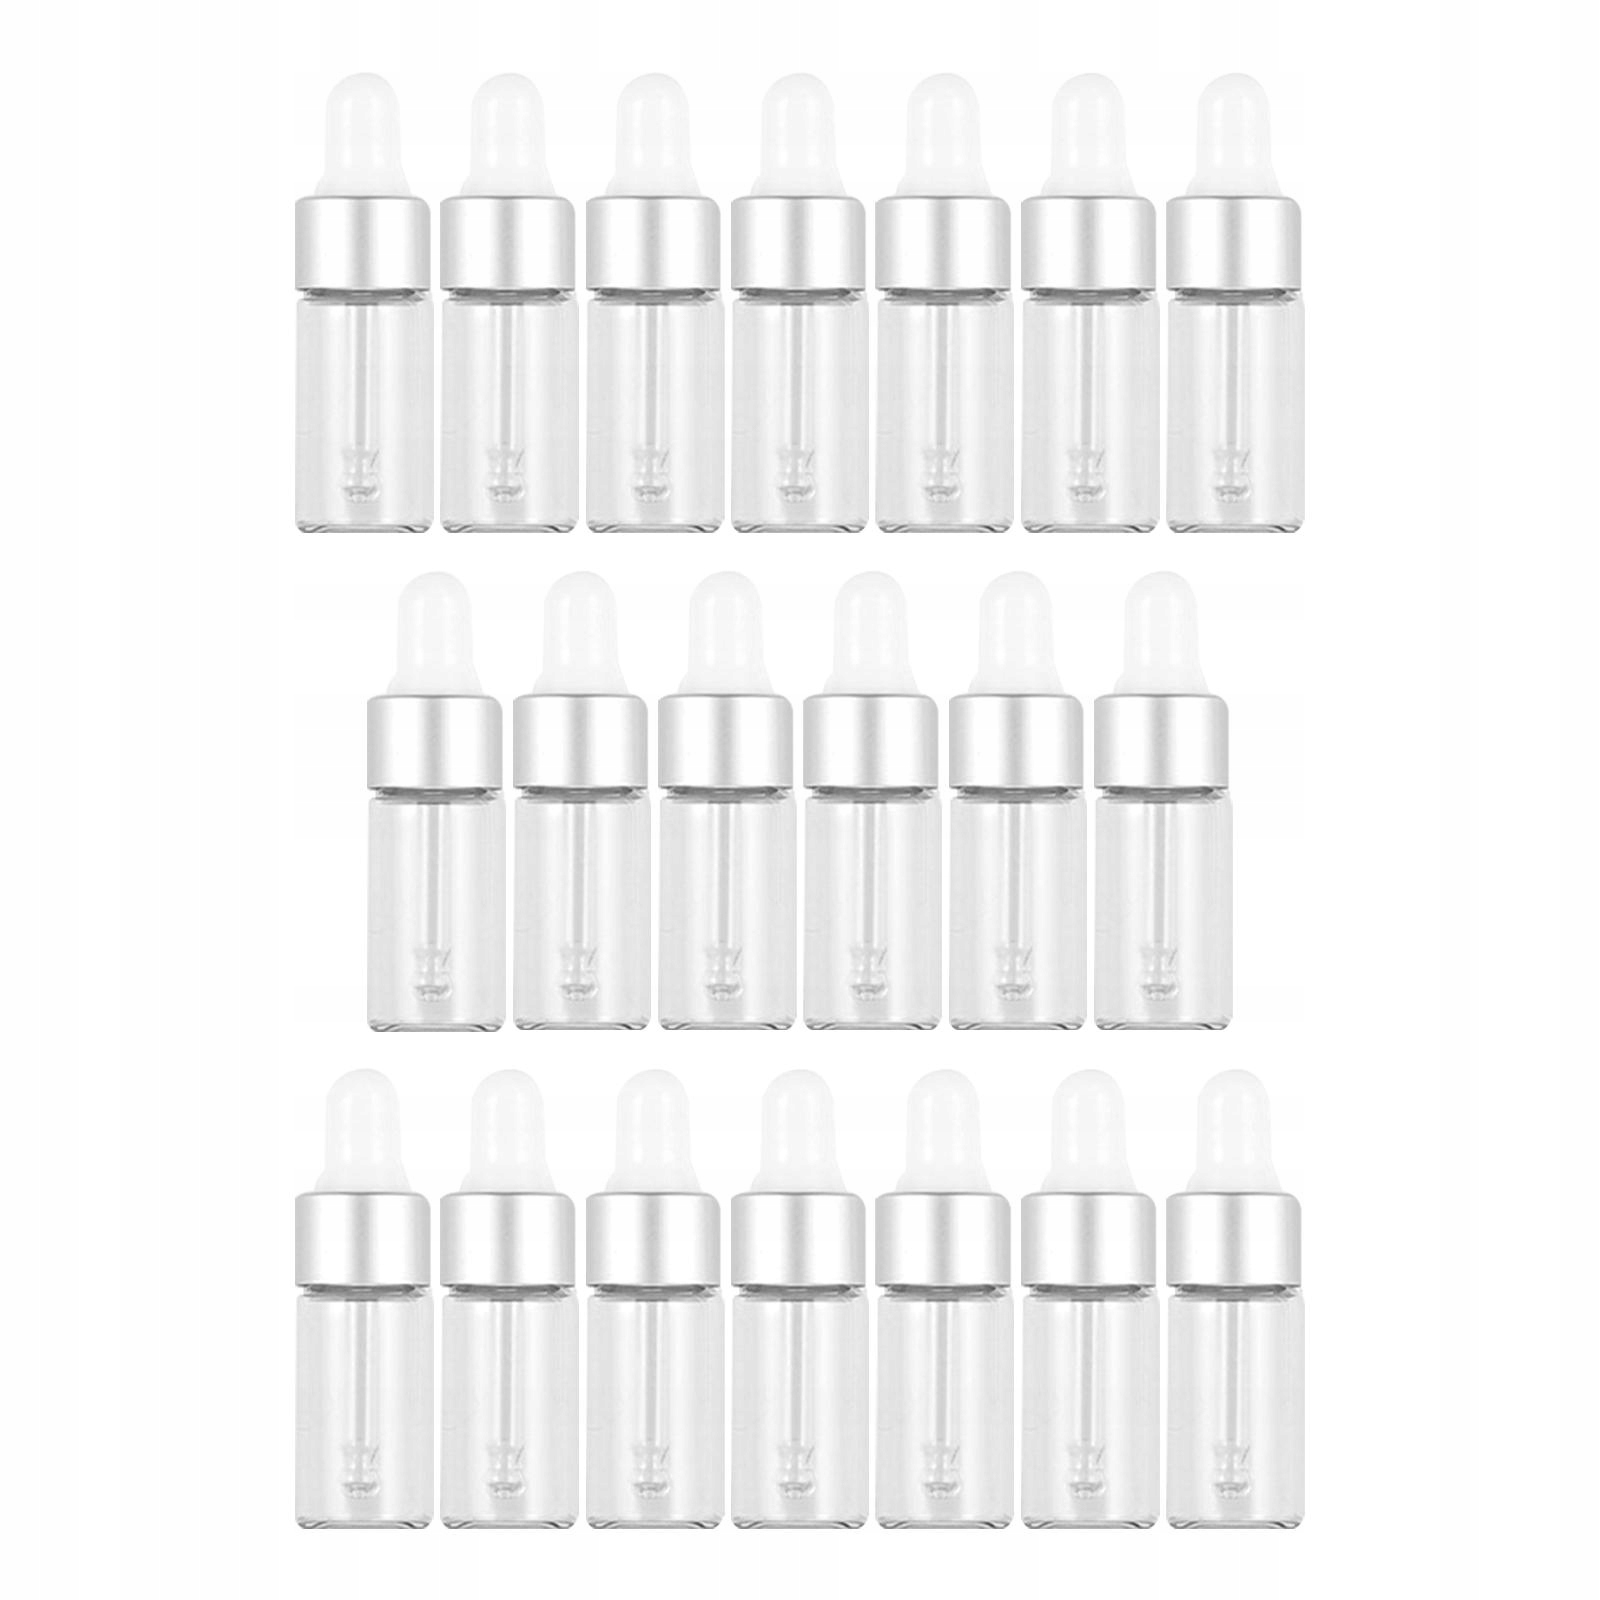 20 ks sklenené fľaštičky s kvapkadlom prázdne strieborné 3ml